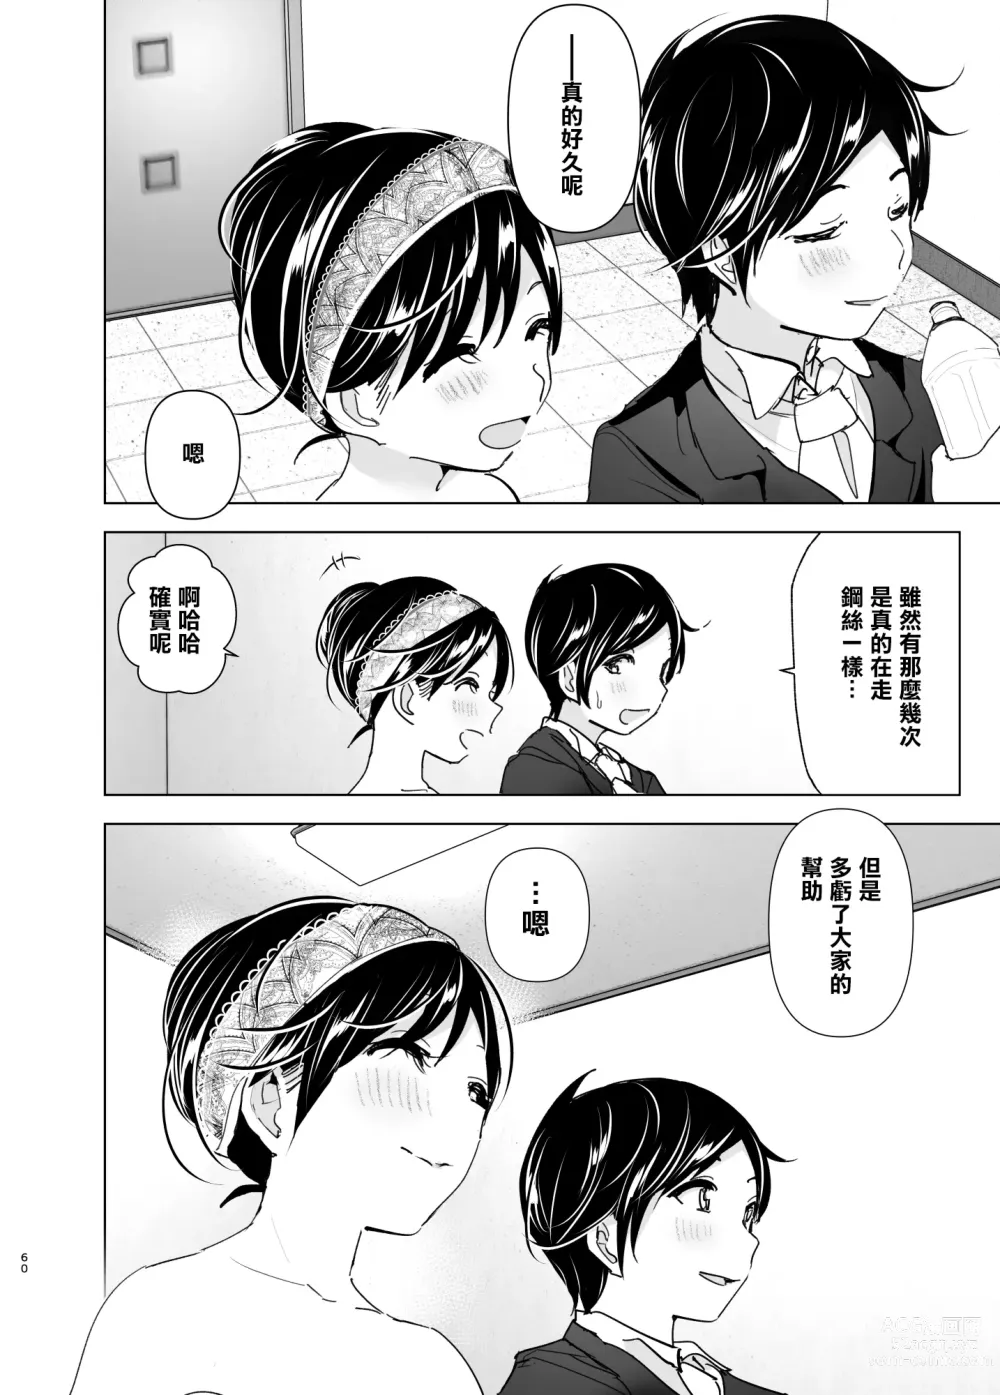 Page 59 of doujinshi 姐姐與傾聽抱怨的弟弟的故事 2 (decensored)